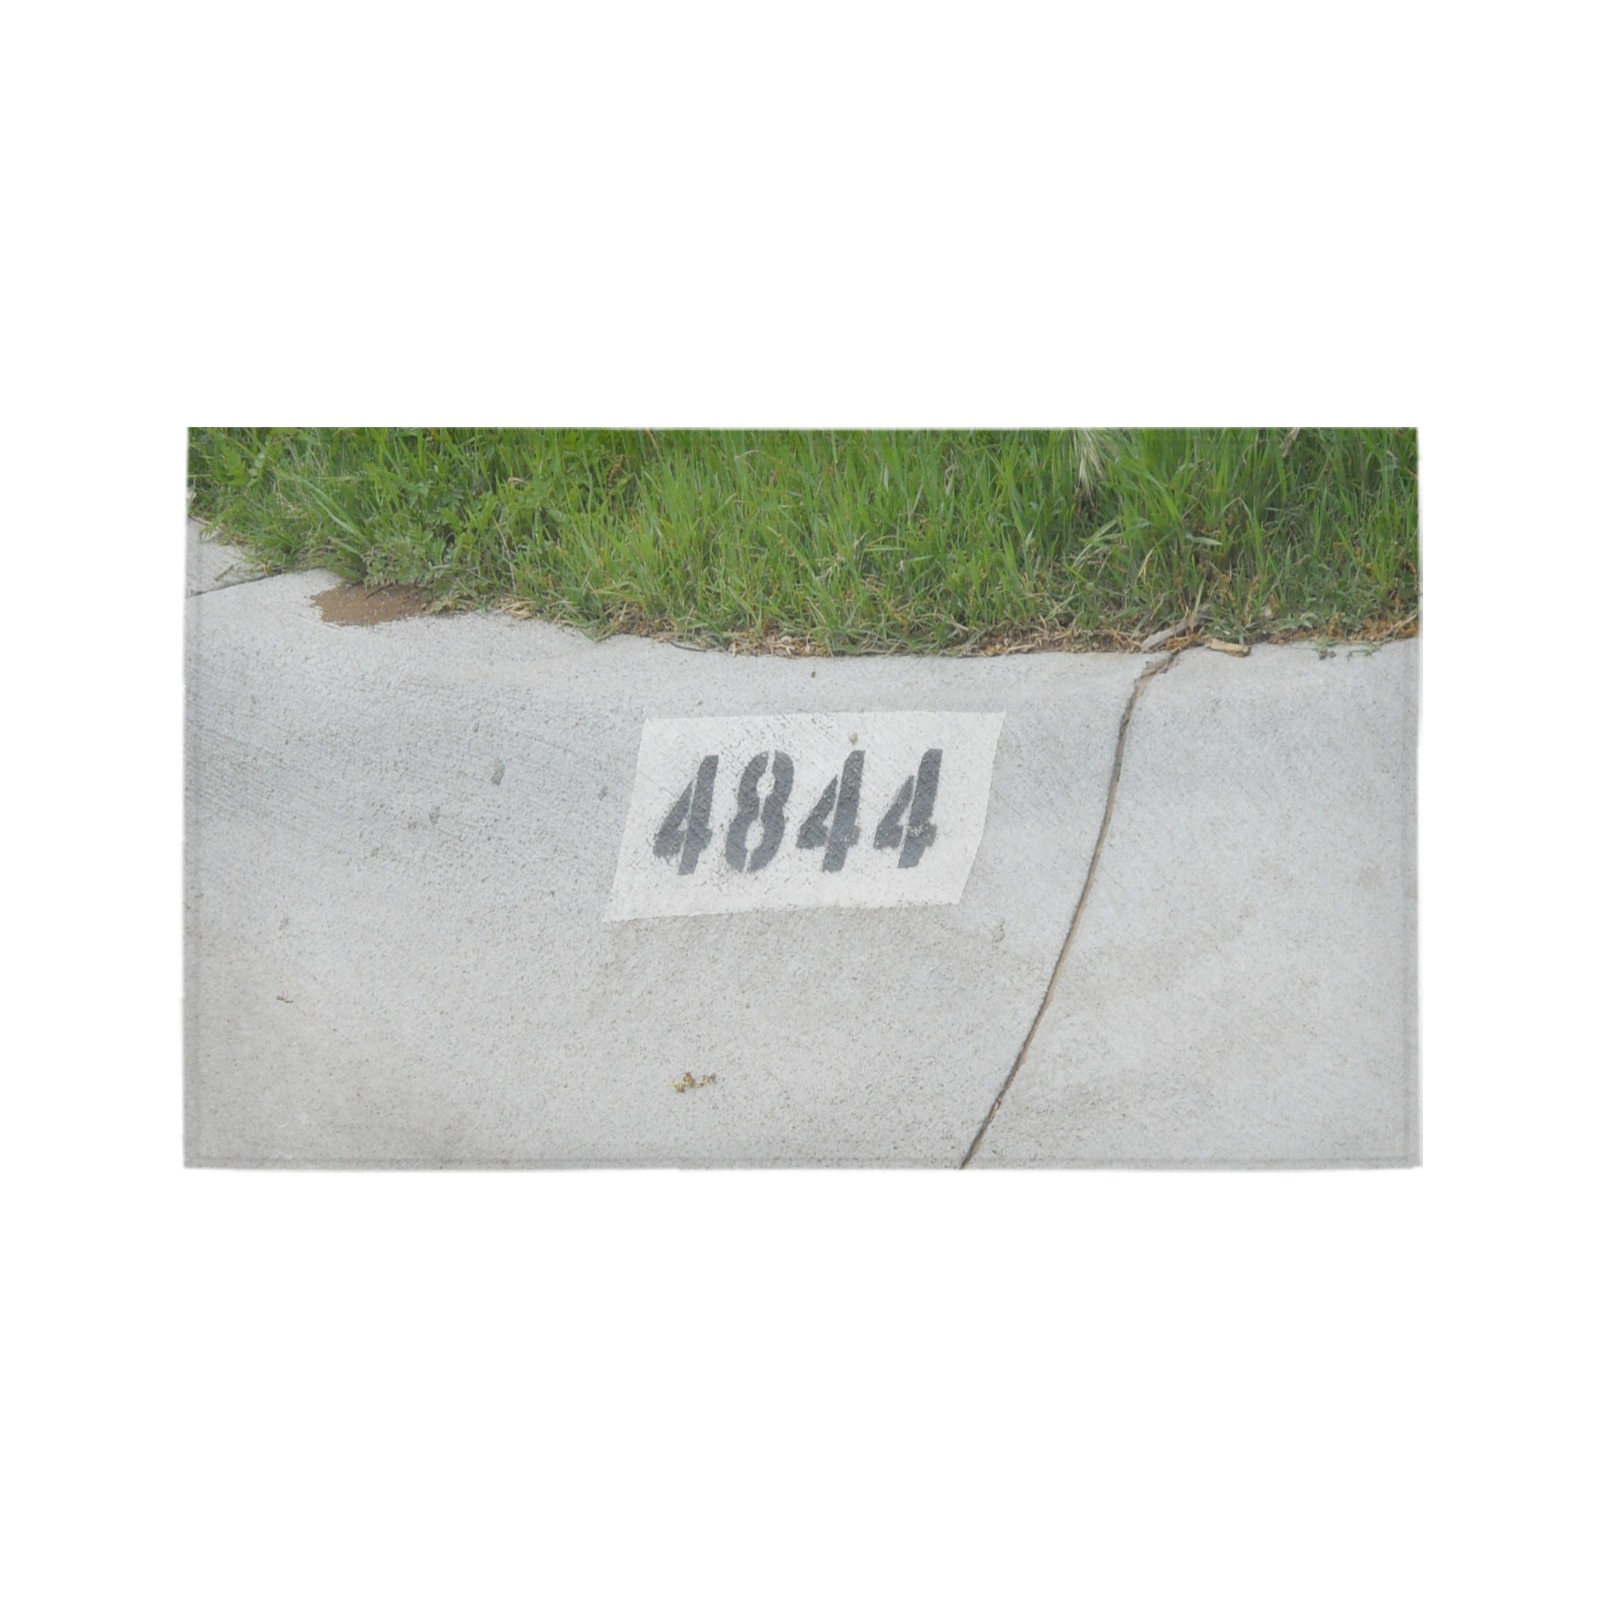 Street Number 4844 Azalea Doormat 30" x 18" (Sponge Material)